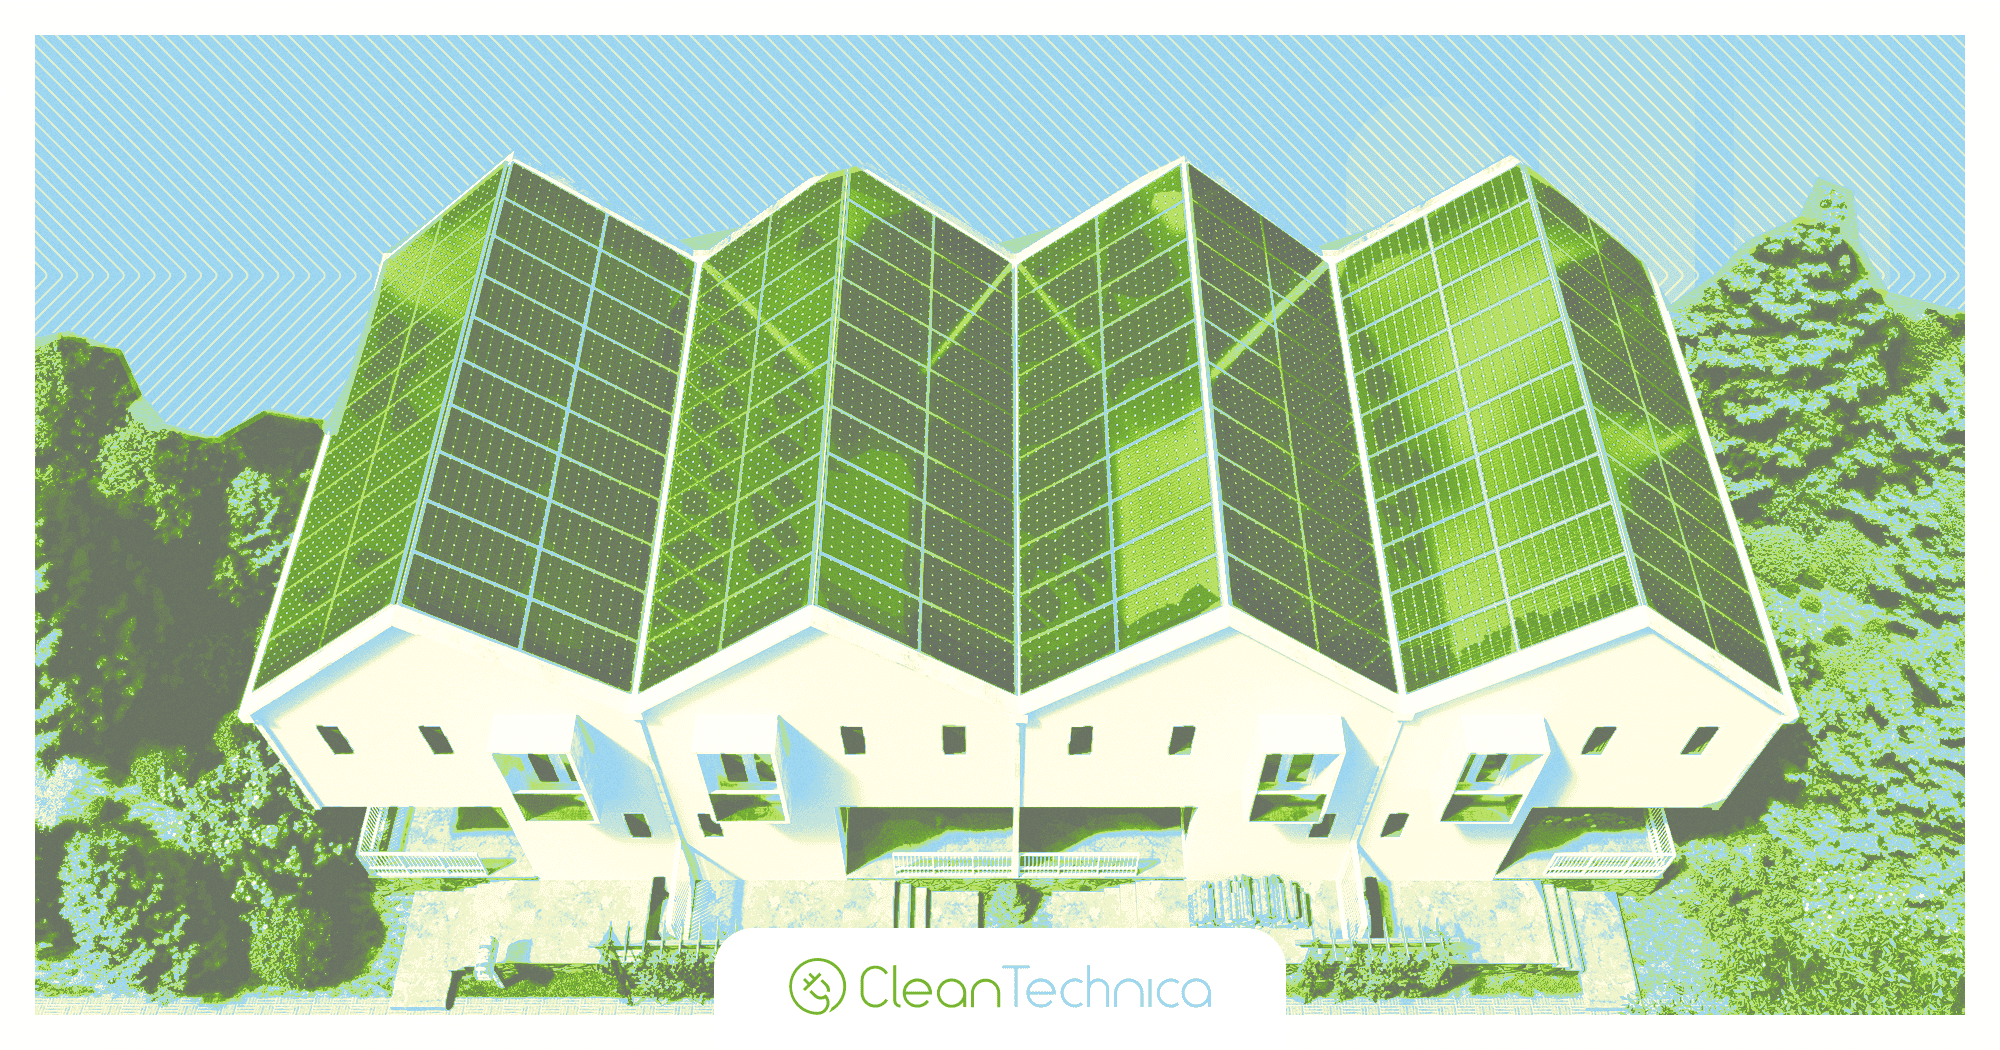 Protezione e responsabilizzazione dei clienti solari americani - CleanTechnica